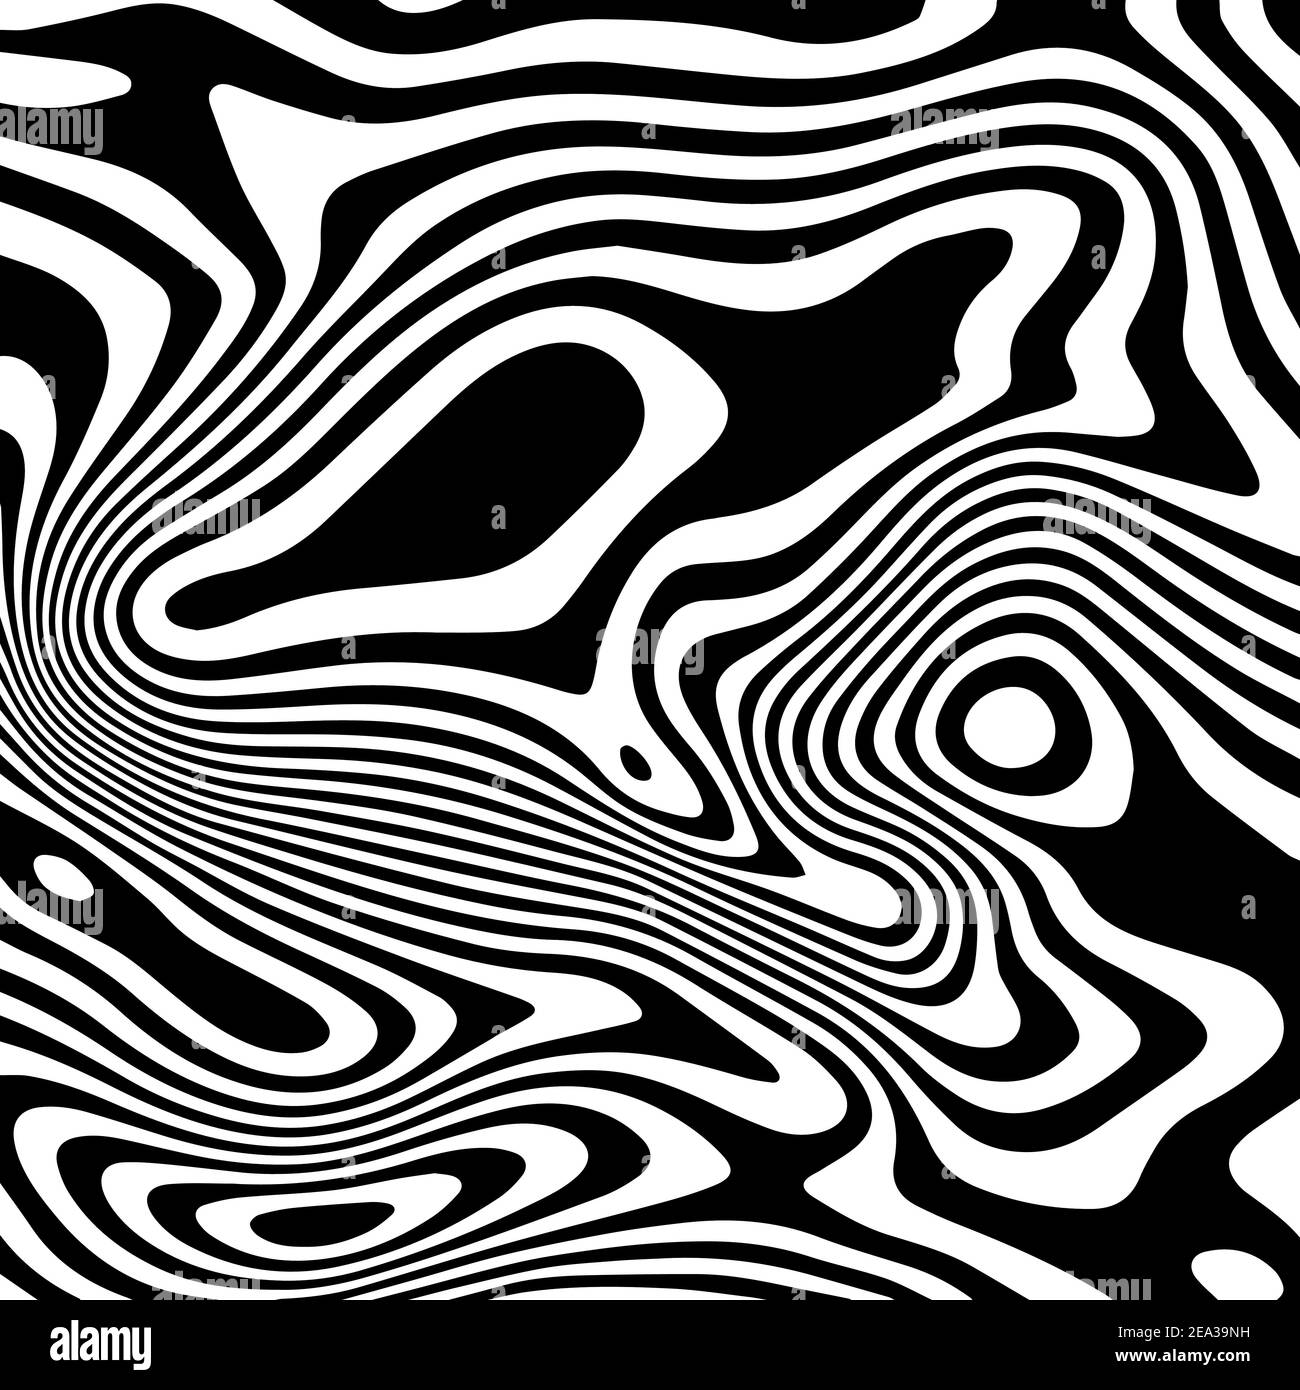 Vektor monochromes Muster, geschwungene Linien, gestreiften schwarz-weißen Hintergrund. Abstrakte dynamische gewellte Textur, 3D visuelle Wirkung Stock Vektor